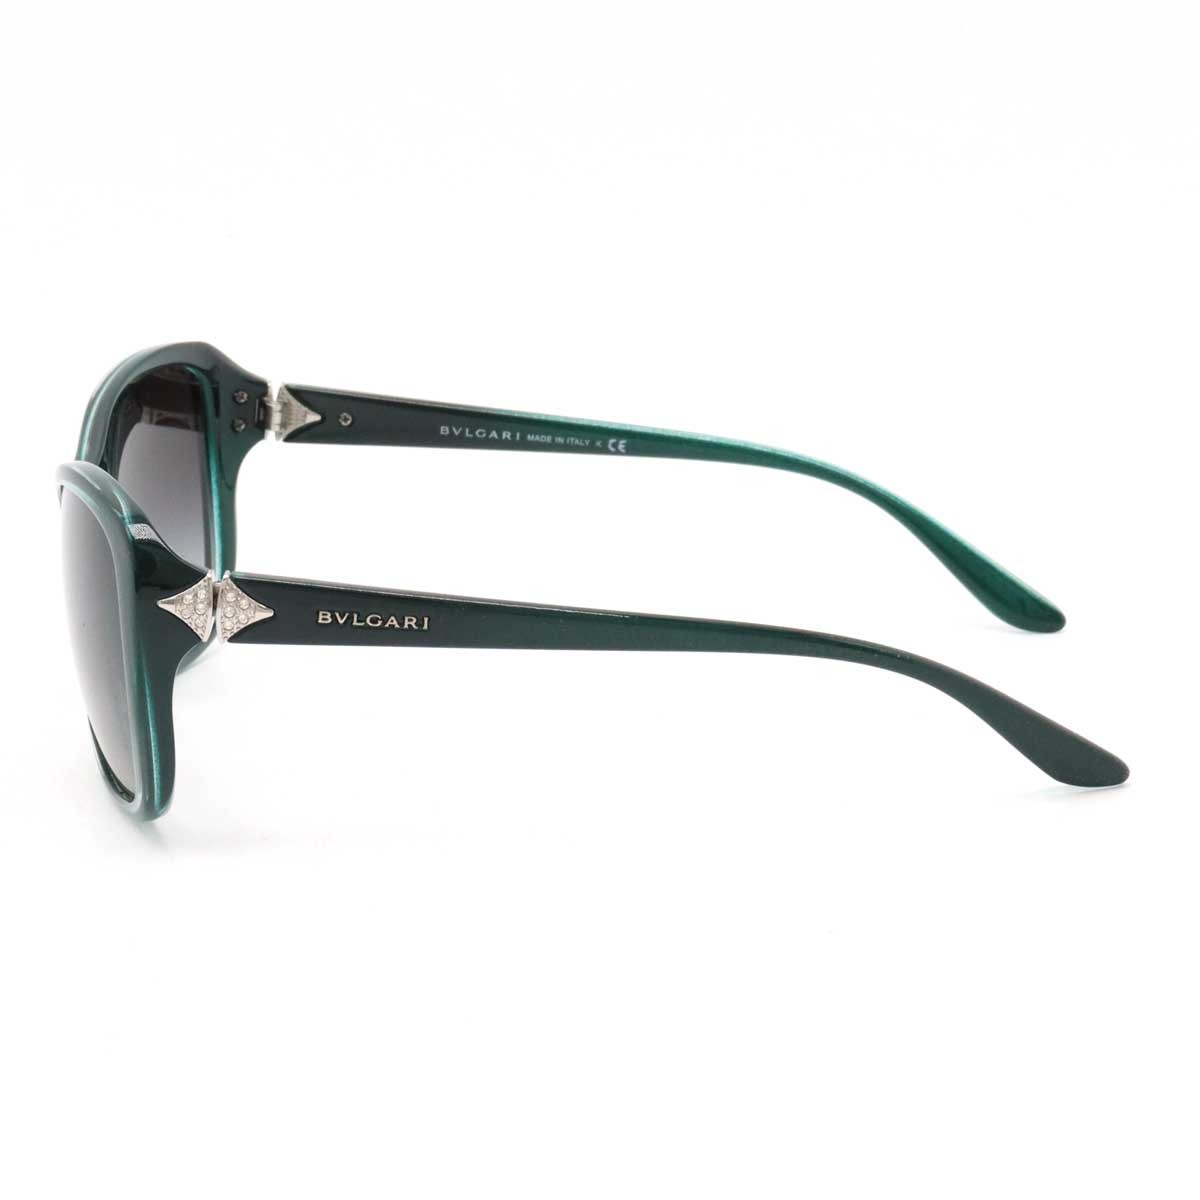 BVLGARI BVLGARY sunglasses black gradation rhinestone green 57*16 135 3N